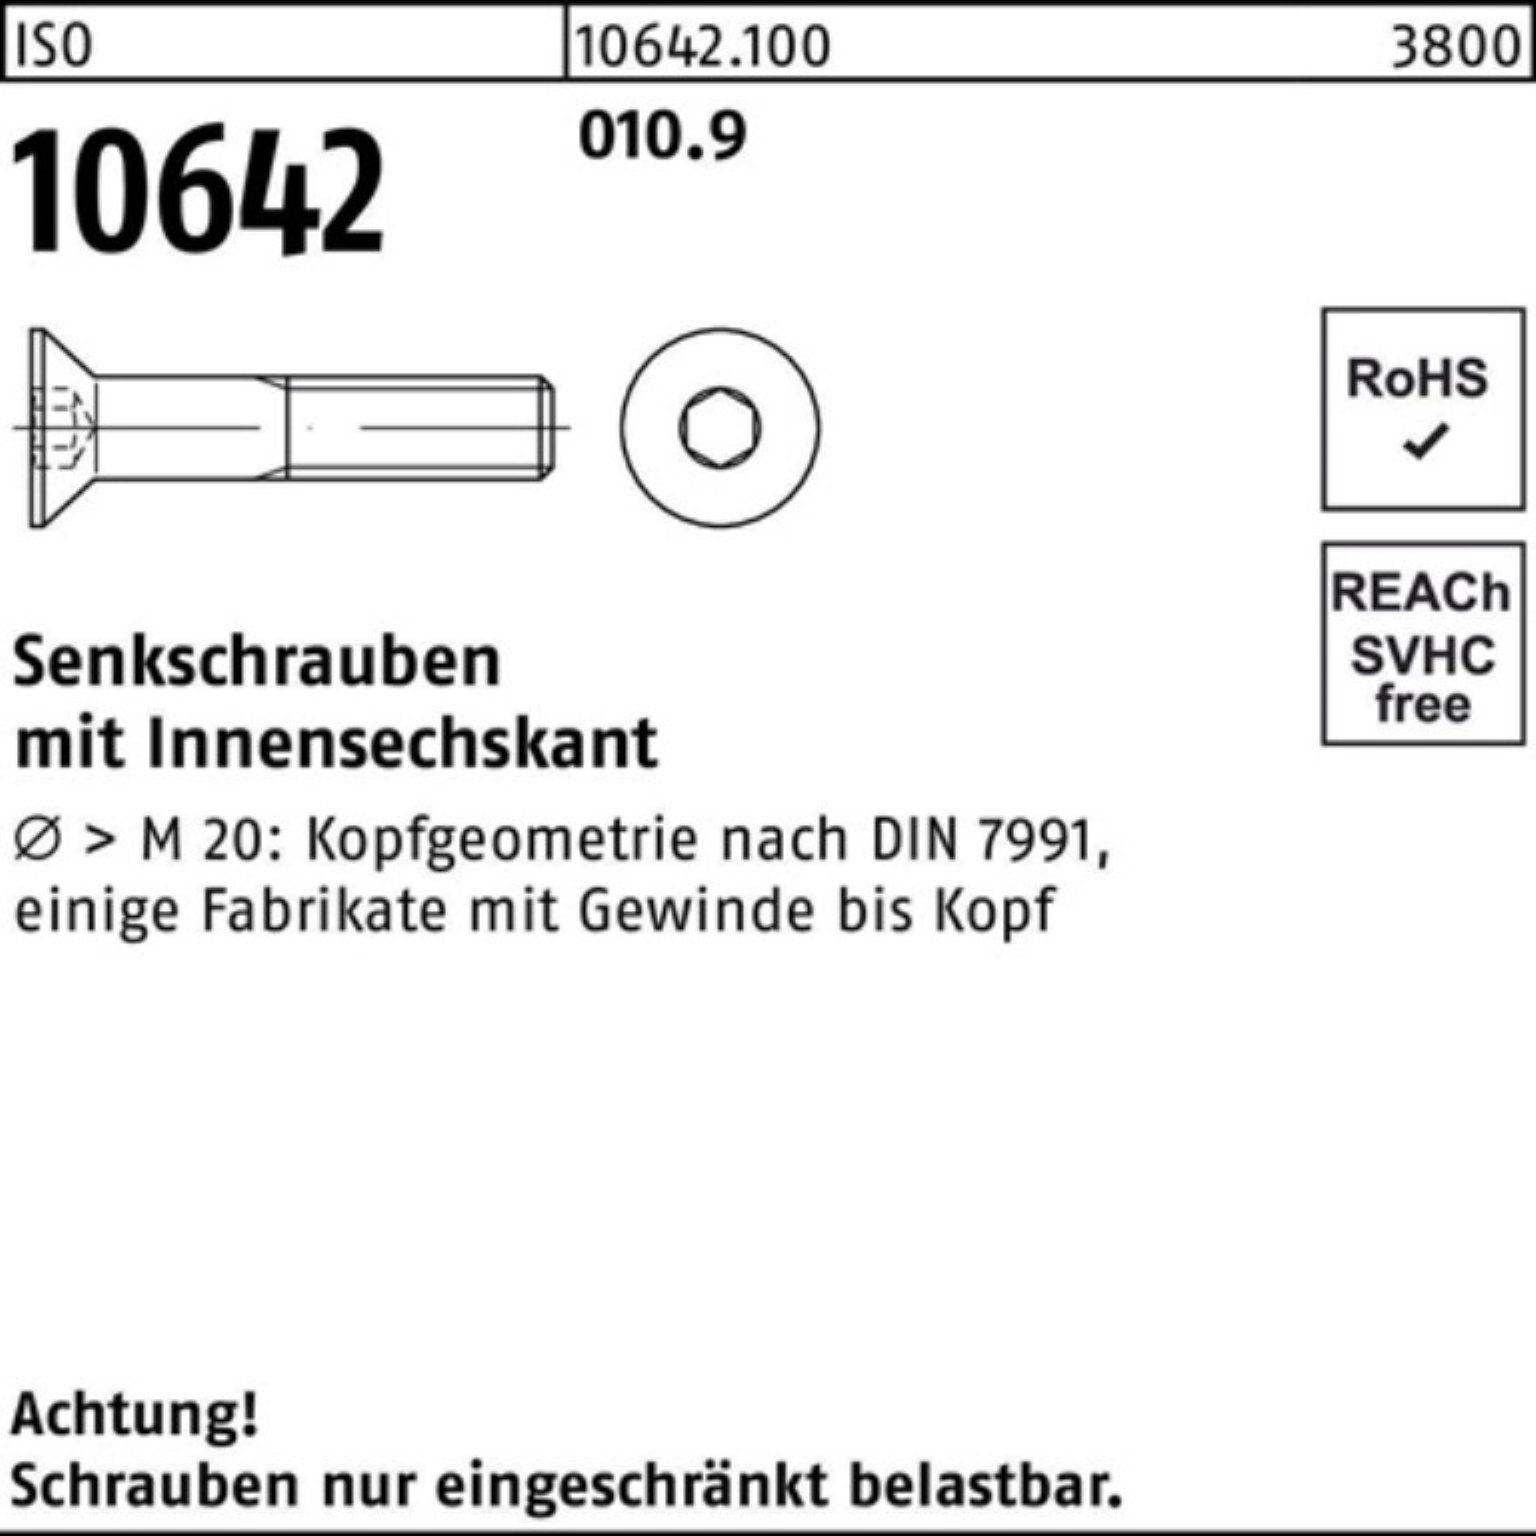 Senkschraube Stück IS Senkschraube Innen-6kt M5x Pack 500er 10642 010.9 Reyher 500 25 ISO